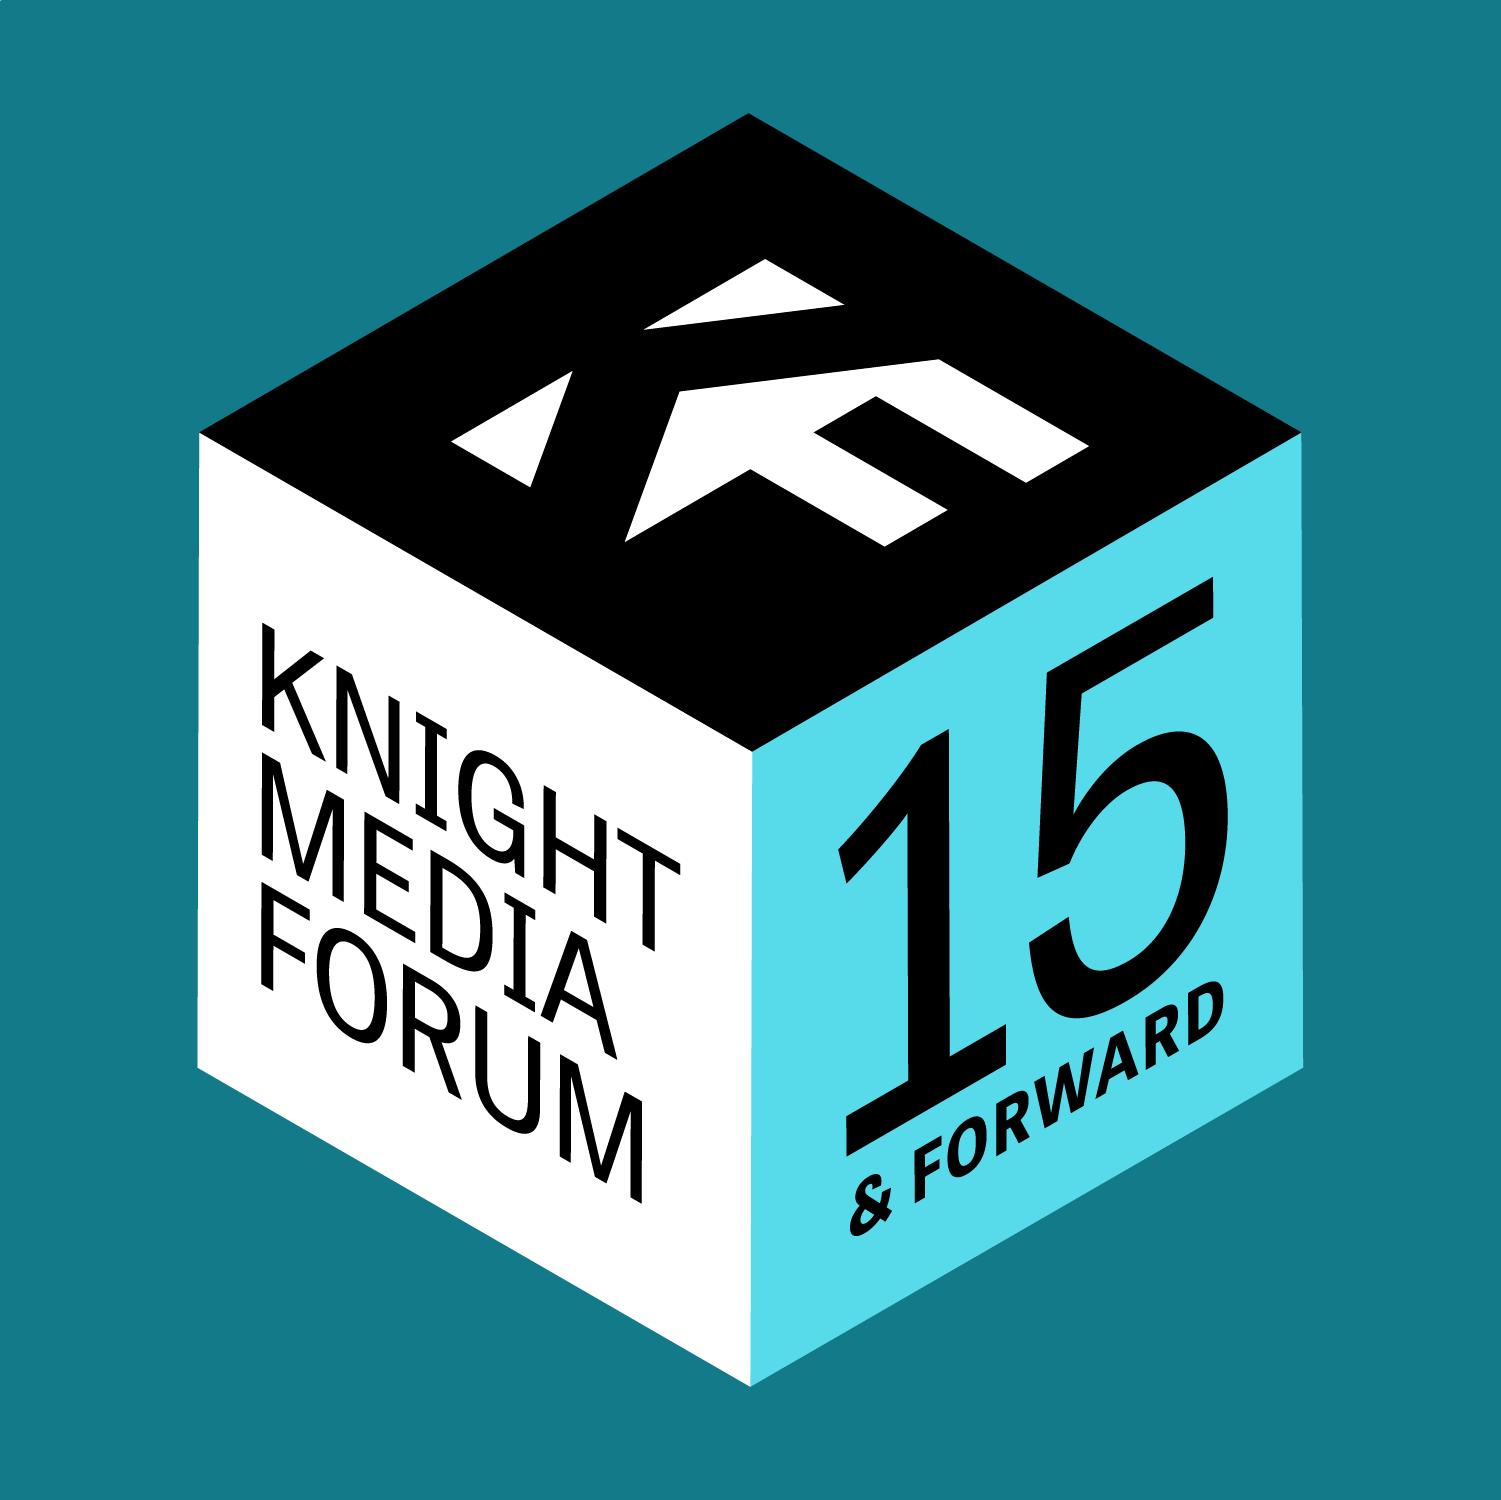 Knight Media Forum 2022